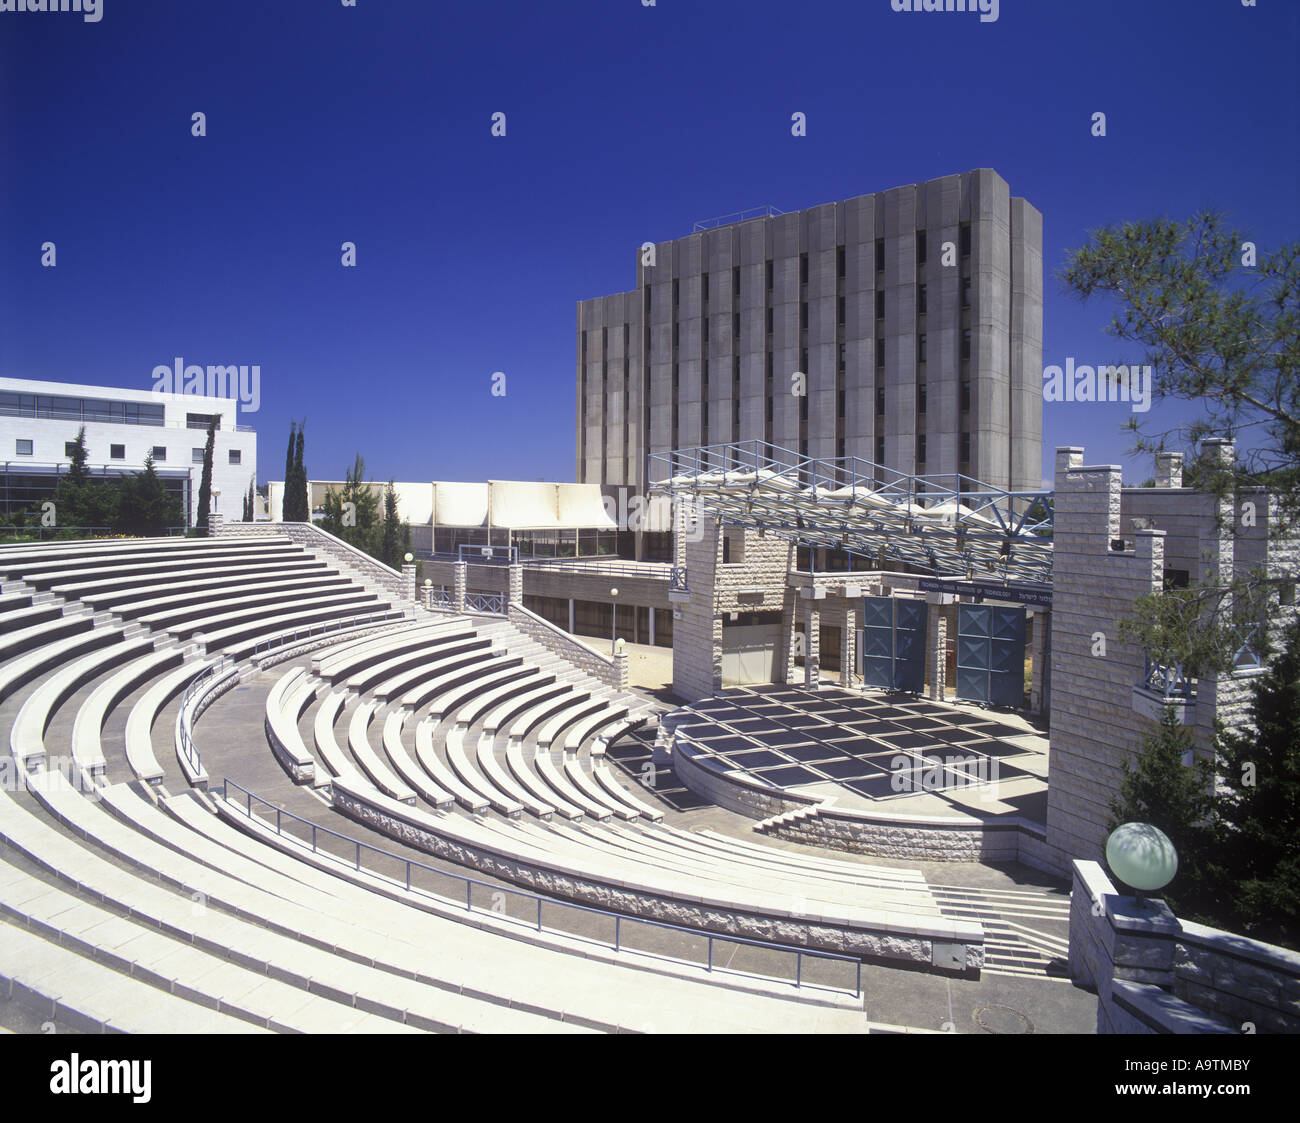 KELLNER anfiteatro Istituto "Technion" Haifa Israel Foto Stock